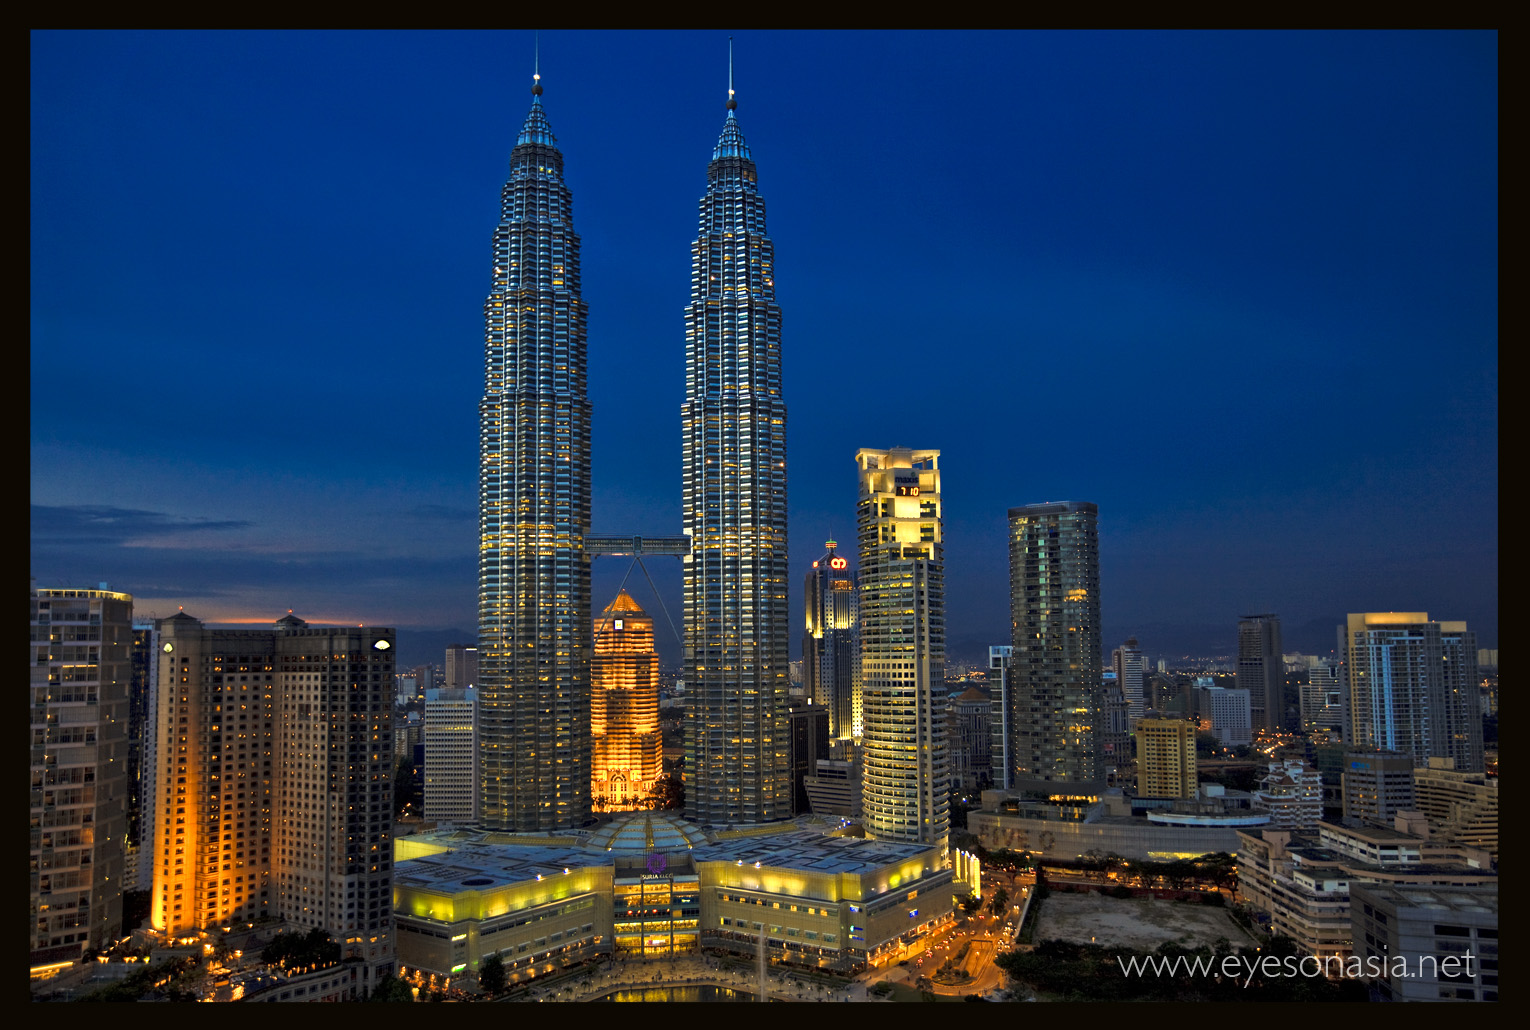 Petronas Towers 2